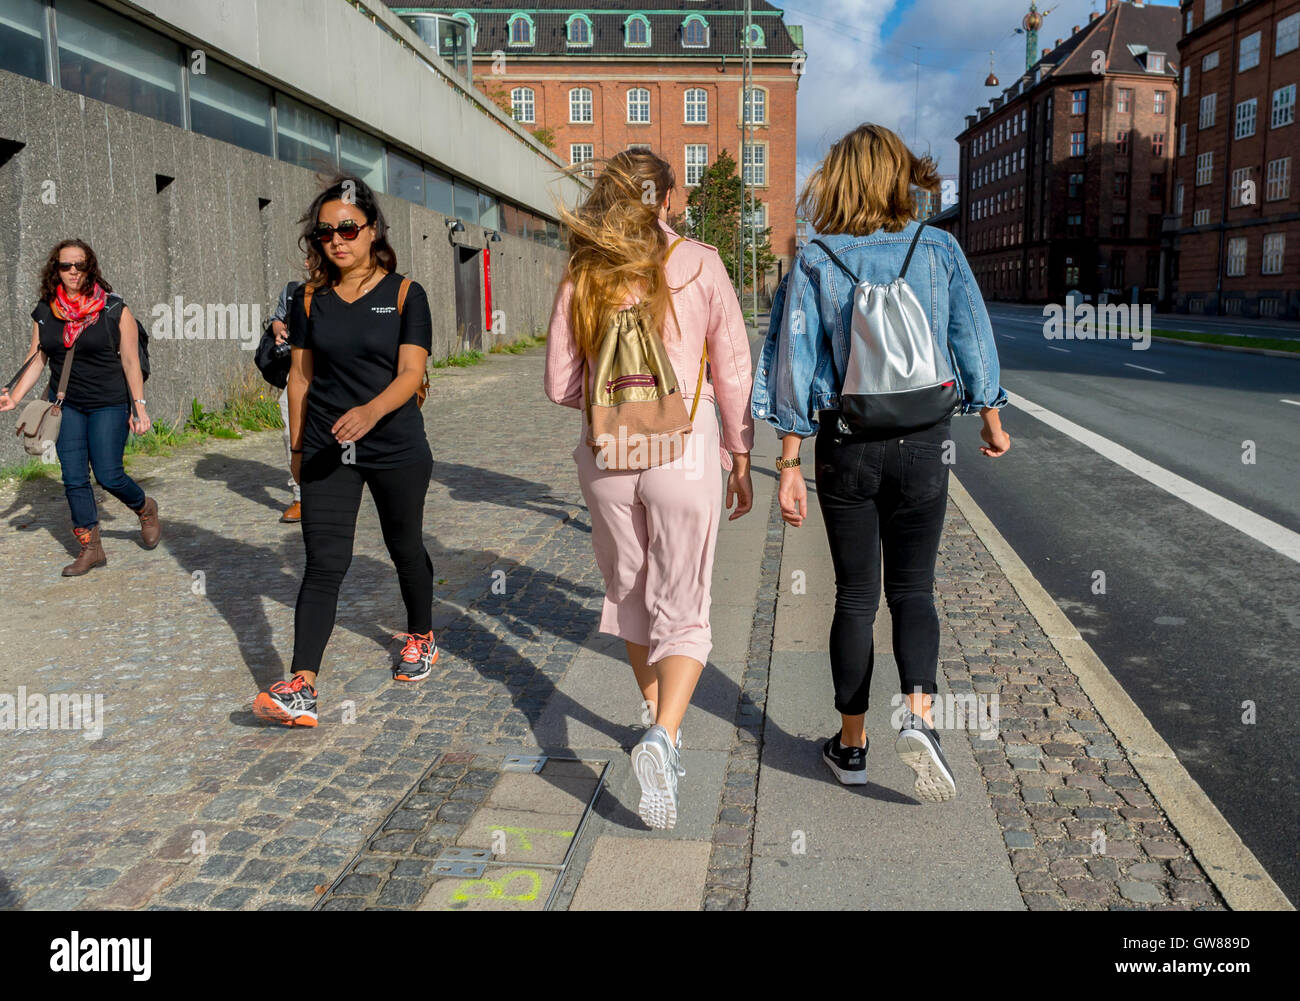 Copenhague, Danemark, des scènes de rue, les femmes s'éloigner avec sacs à dos Banque D'Images